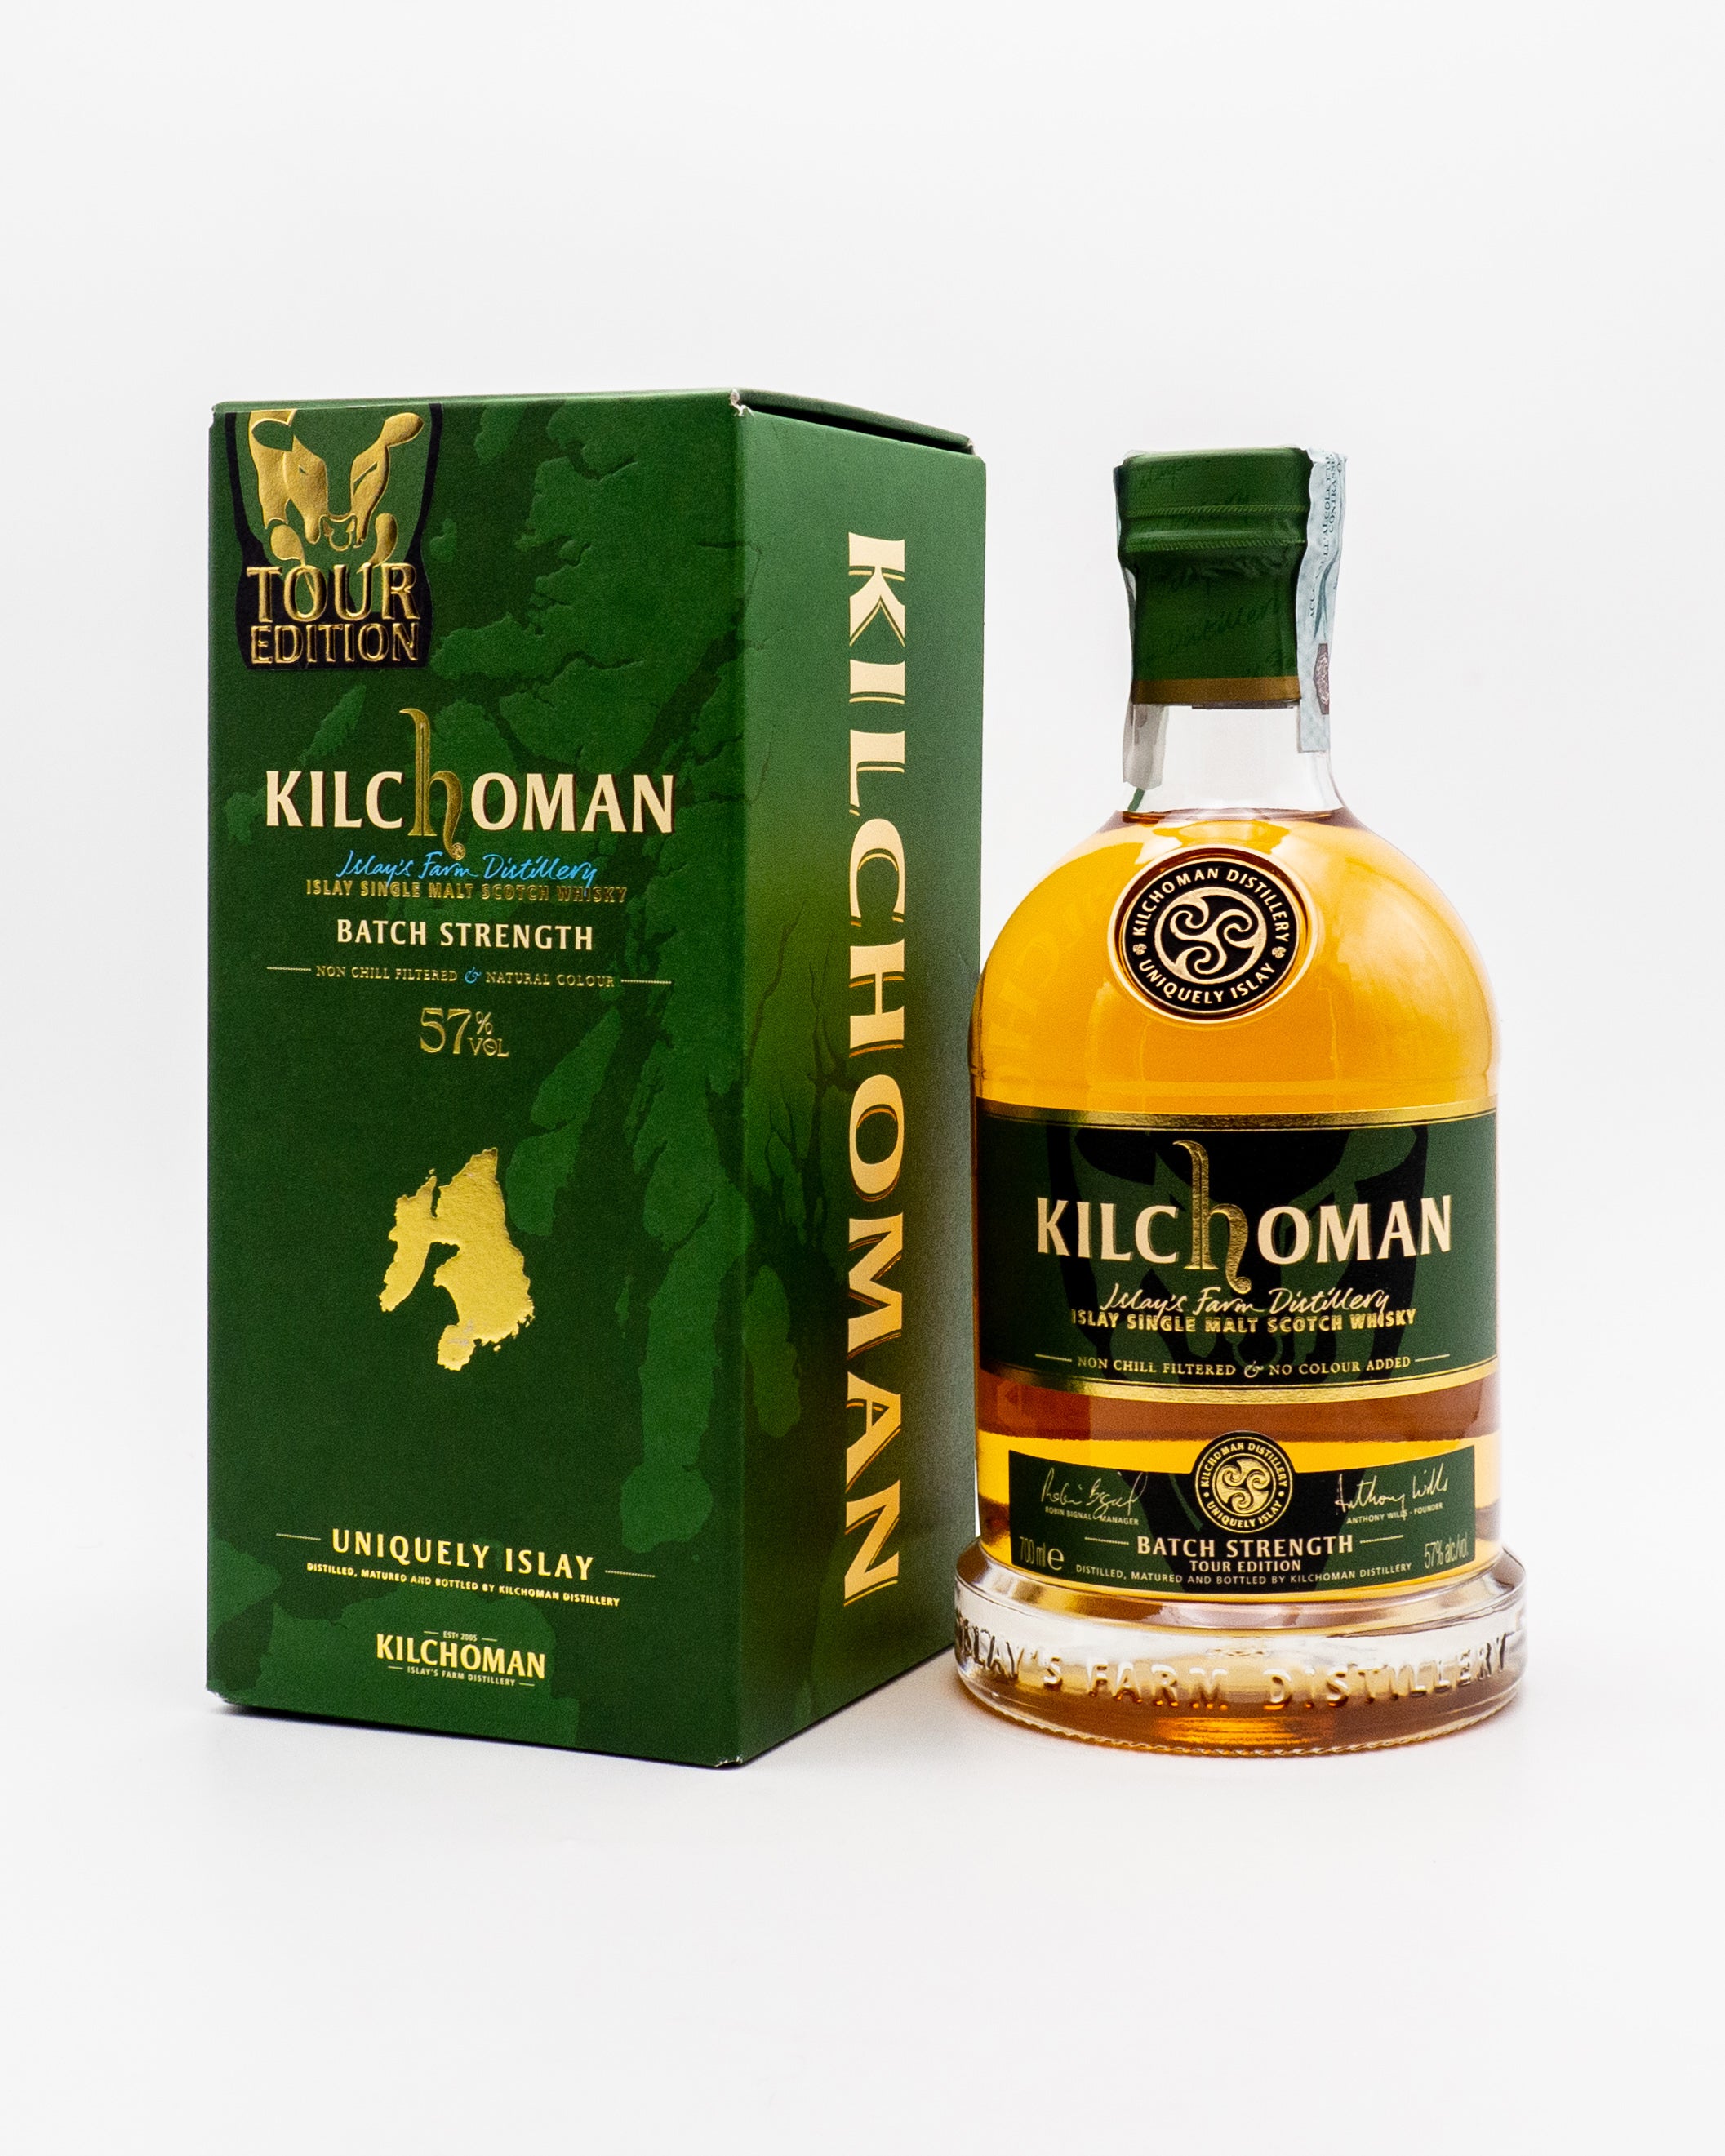 Whisky Kilchoman Batch Strength Tour Edition - Kilchoman